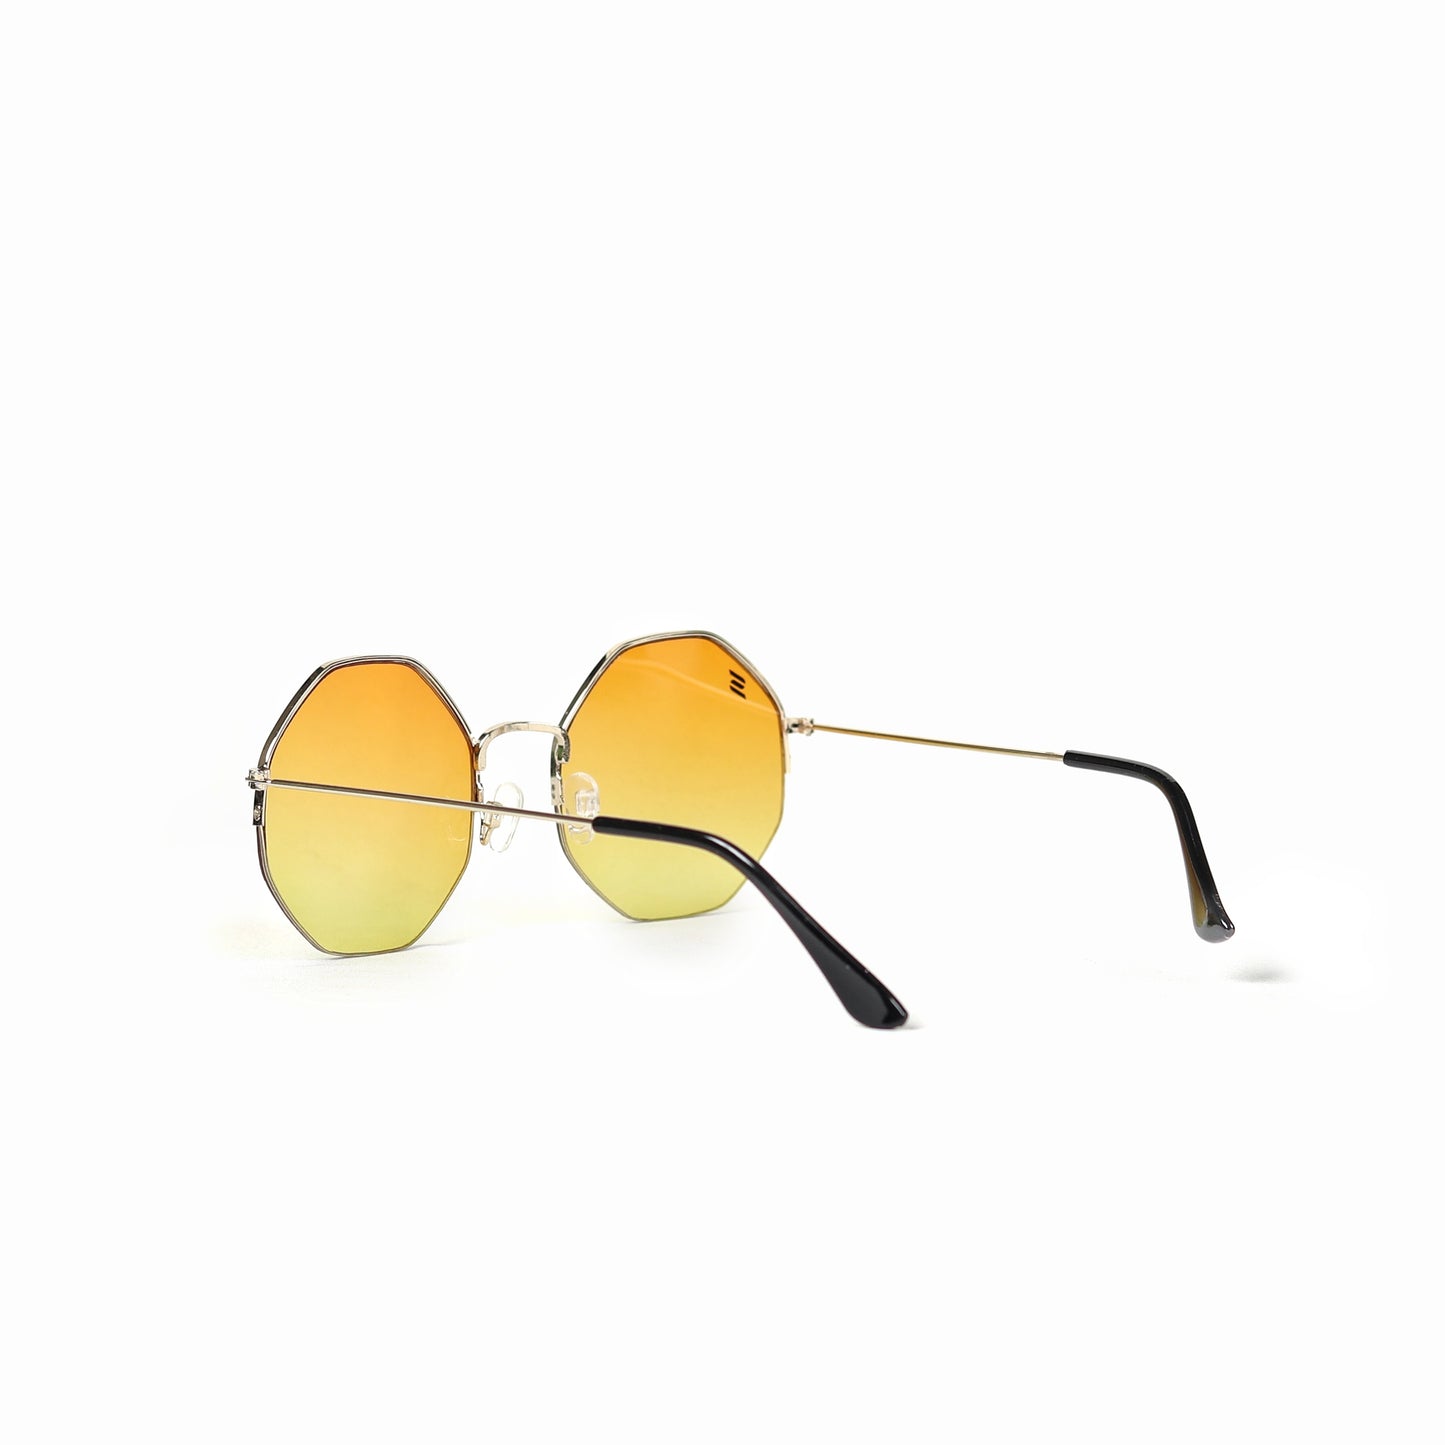 Octa metal shades (Yellow)